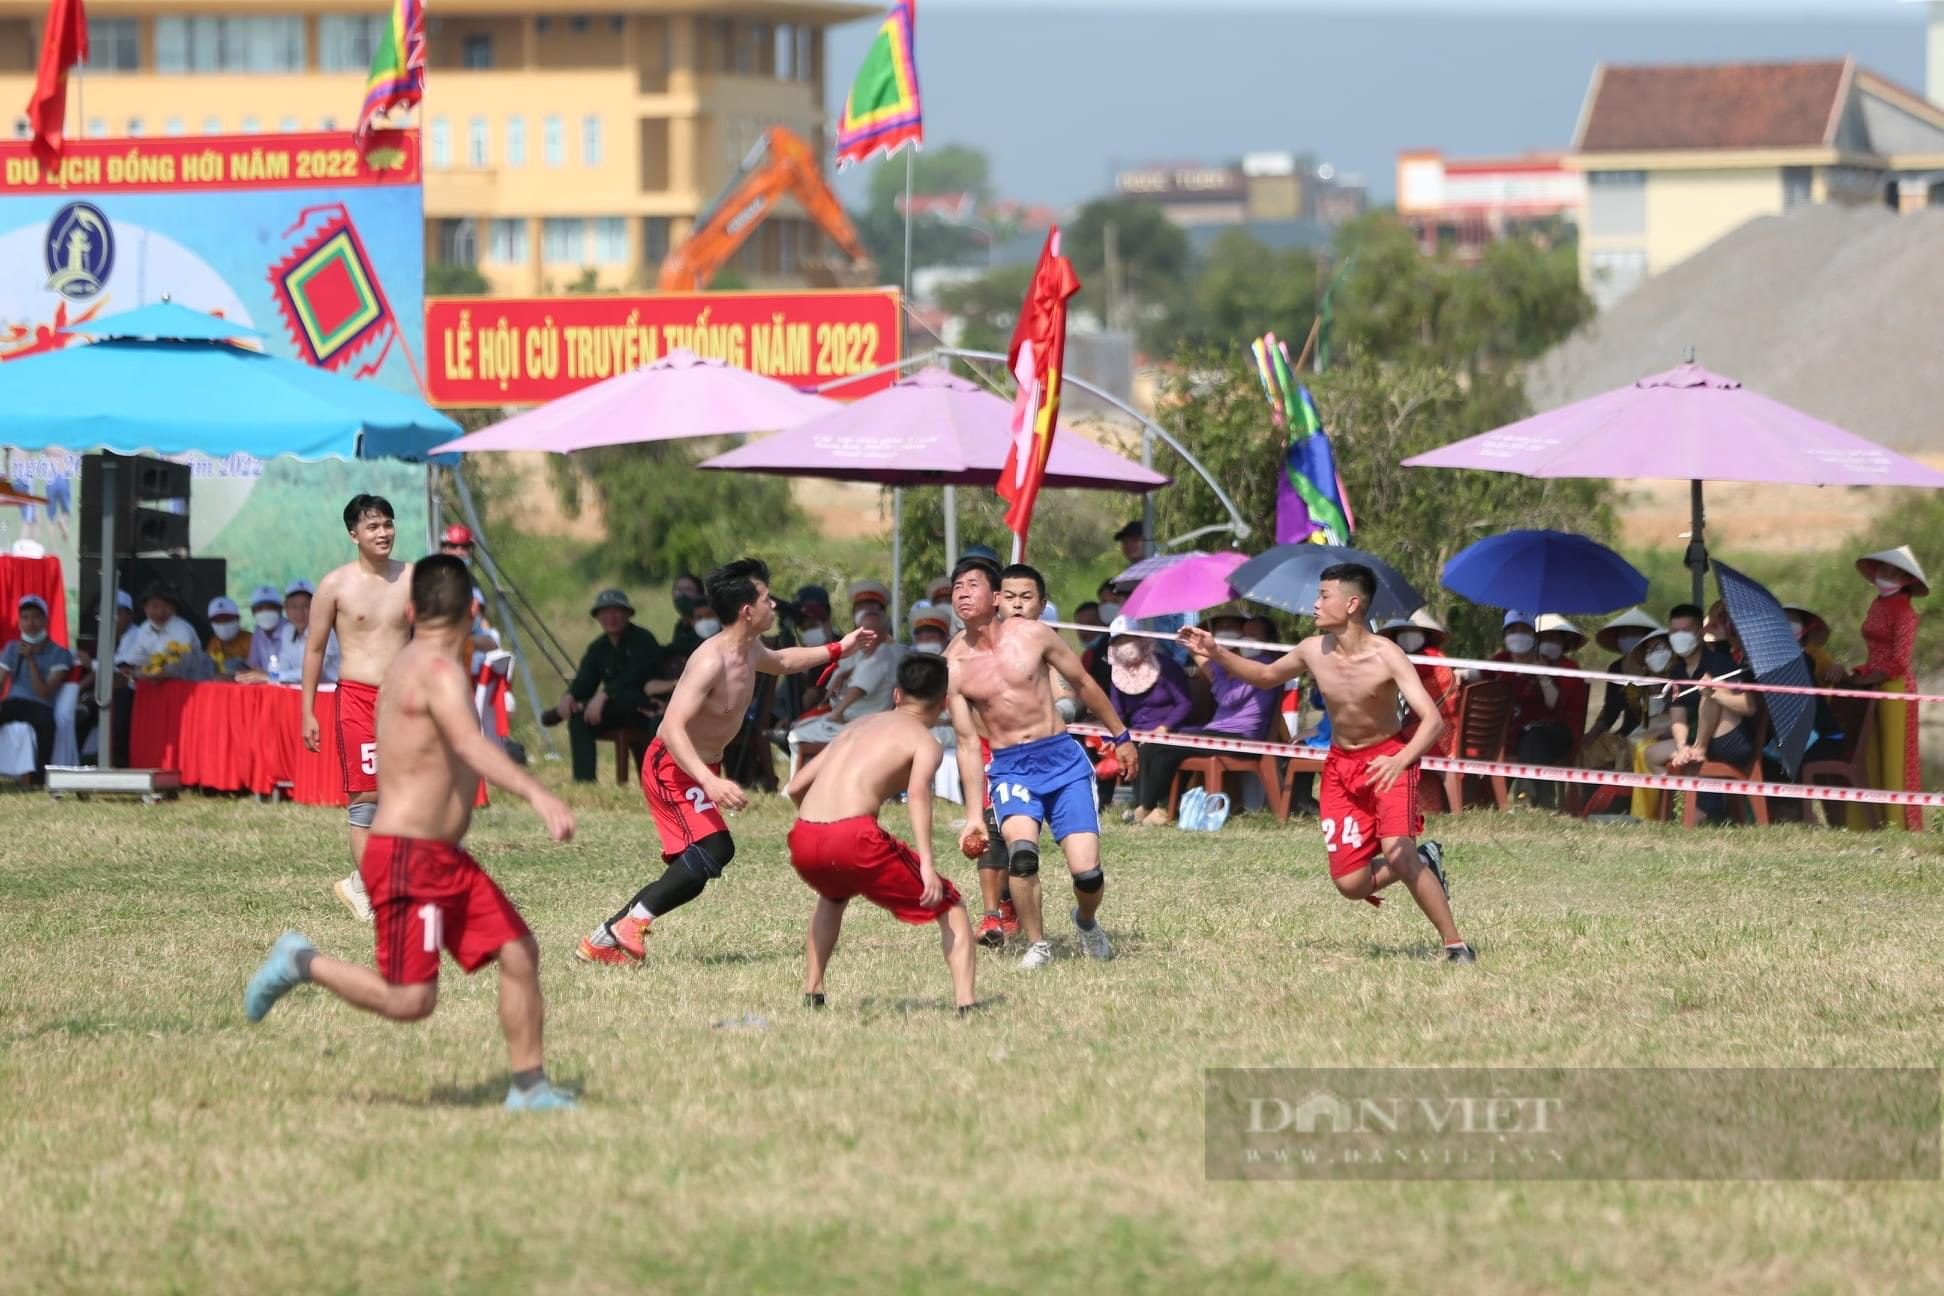 Ảnh: 50 trai tráng lao vào tranh nhau quả cầu trong lễ hội cù ở Quảng Bình - Ảnh 1.